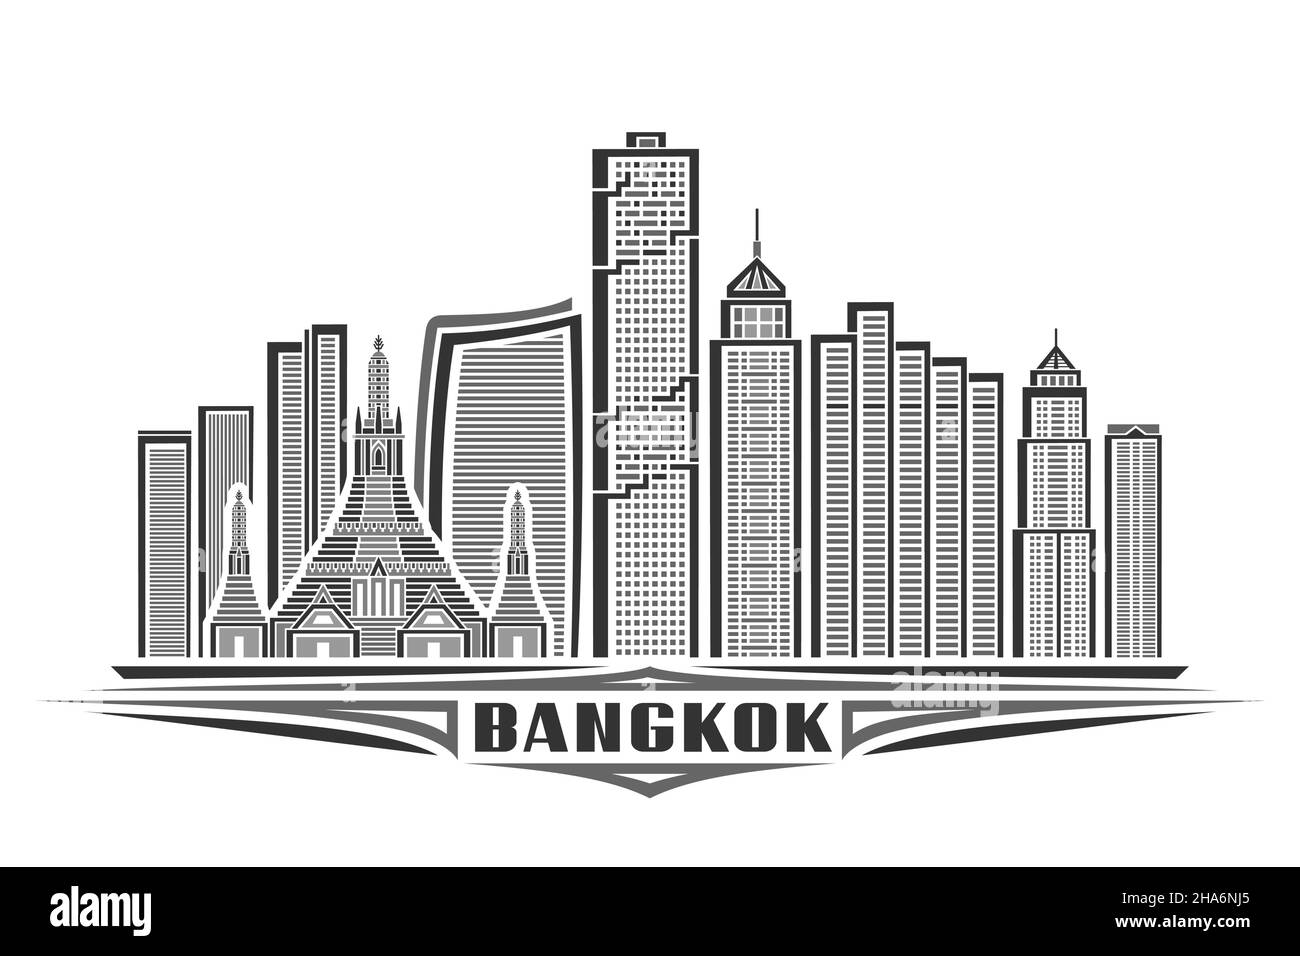 Illustrazione vettoriale di Bangkok, poster orizzontale monocromatico con disegno lineare famoso paesaggio cittadino di bangkok, concetto urbano di arte di linea con lett decorativo Illustrazione Vettoriale